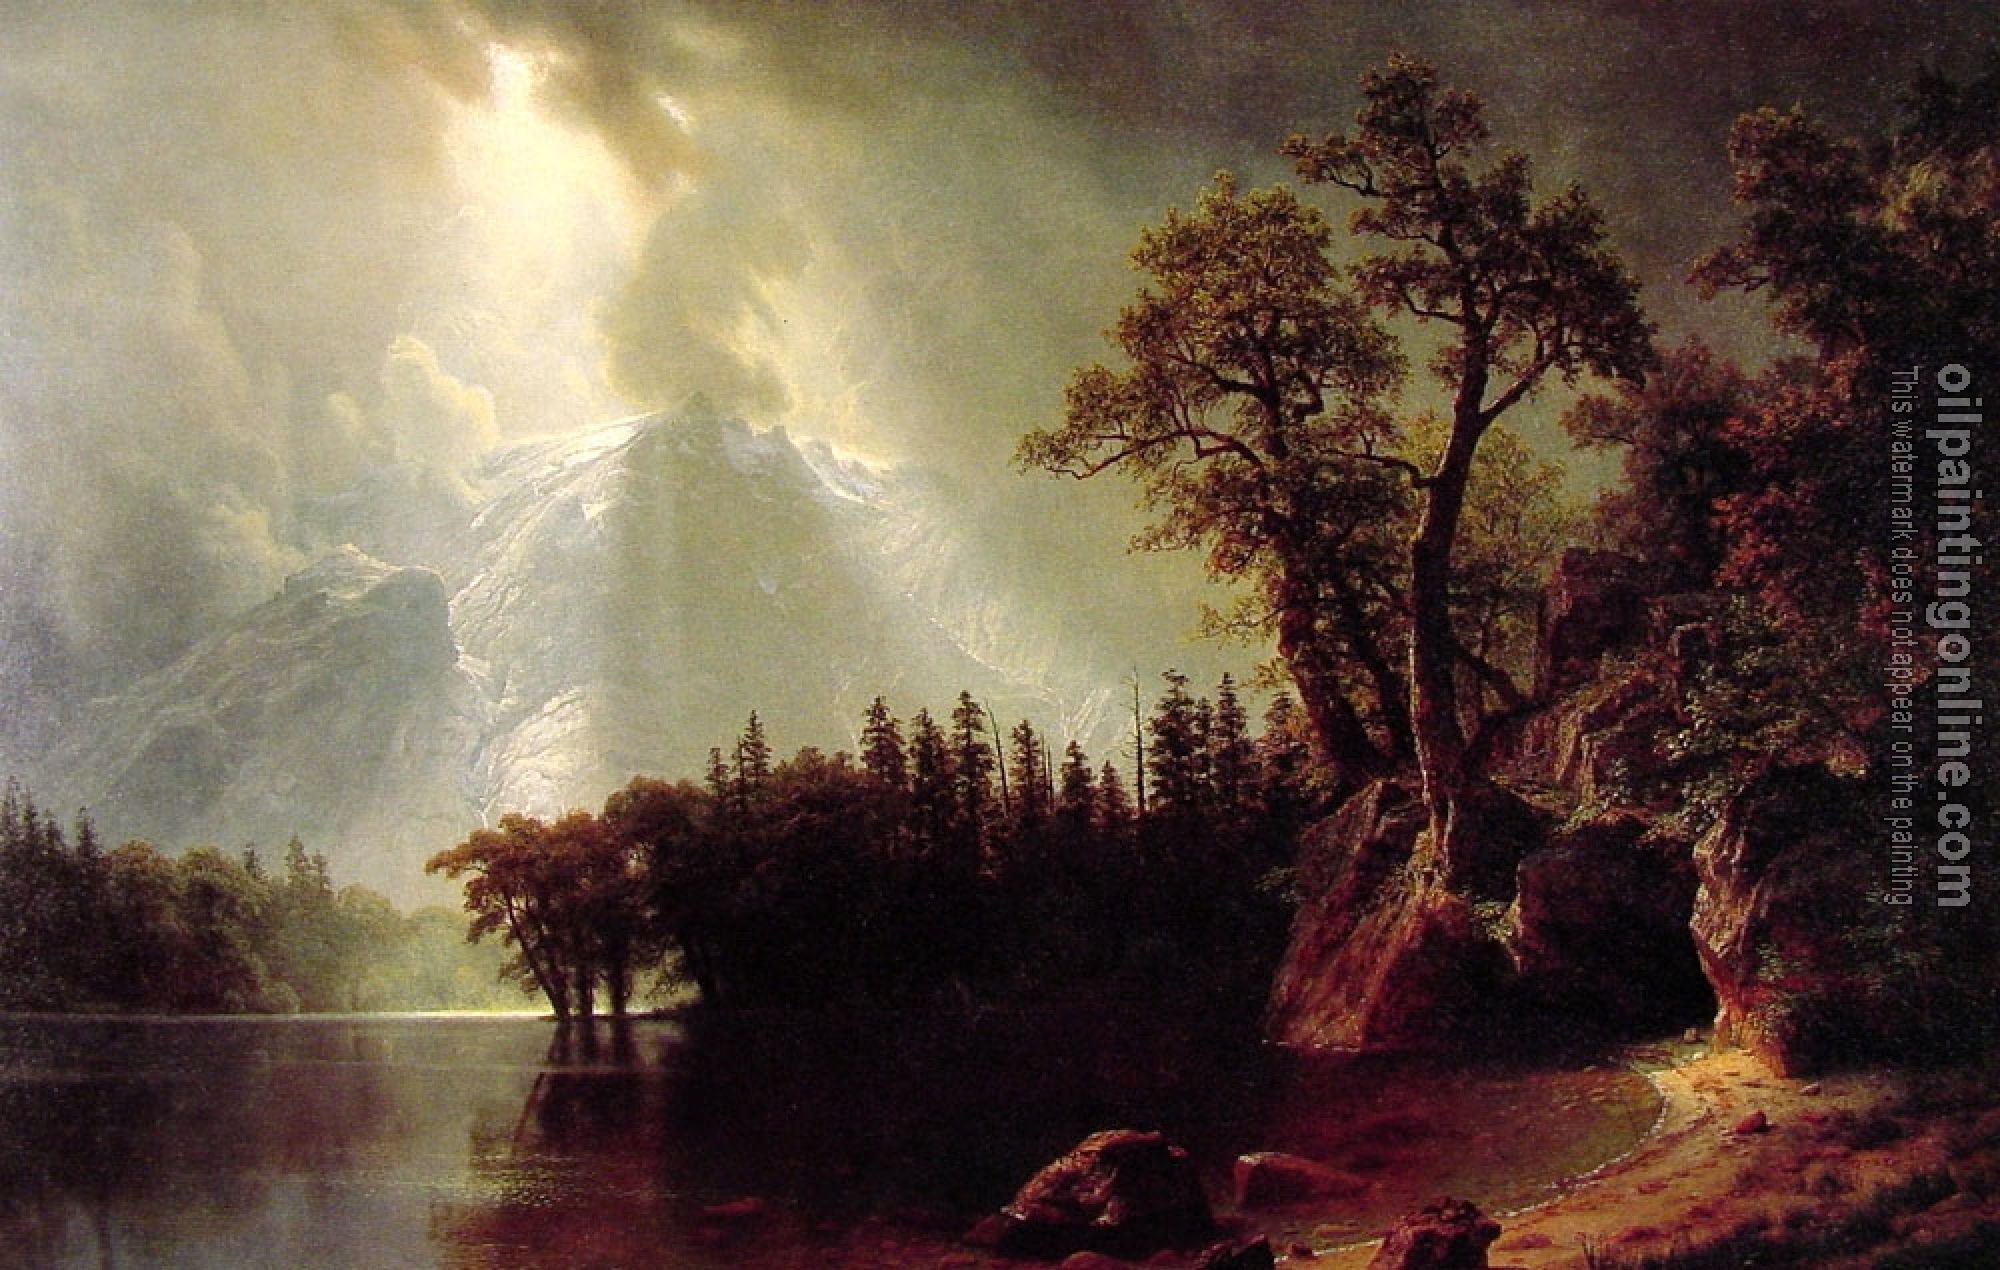 Bierstadt, Albert - Passing Storm over the Sierra Nevada